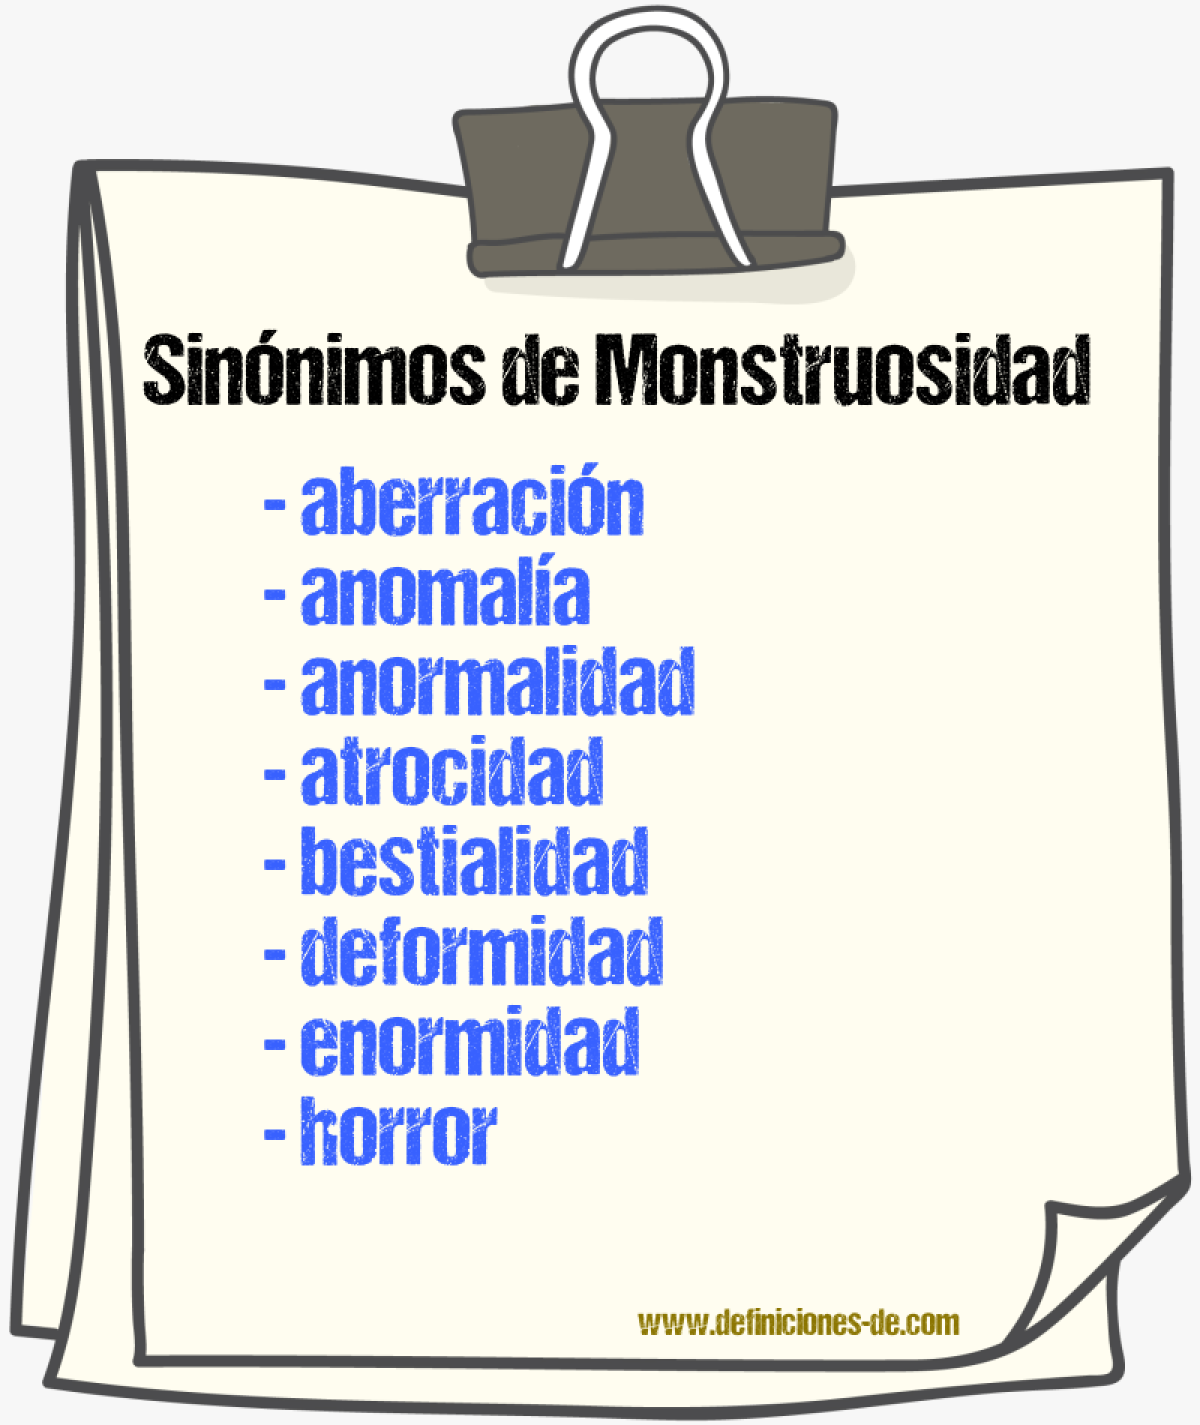 Sinónimos de monstruosidad